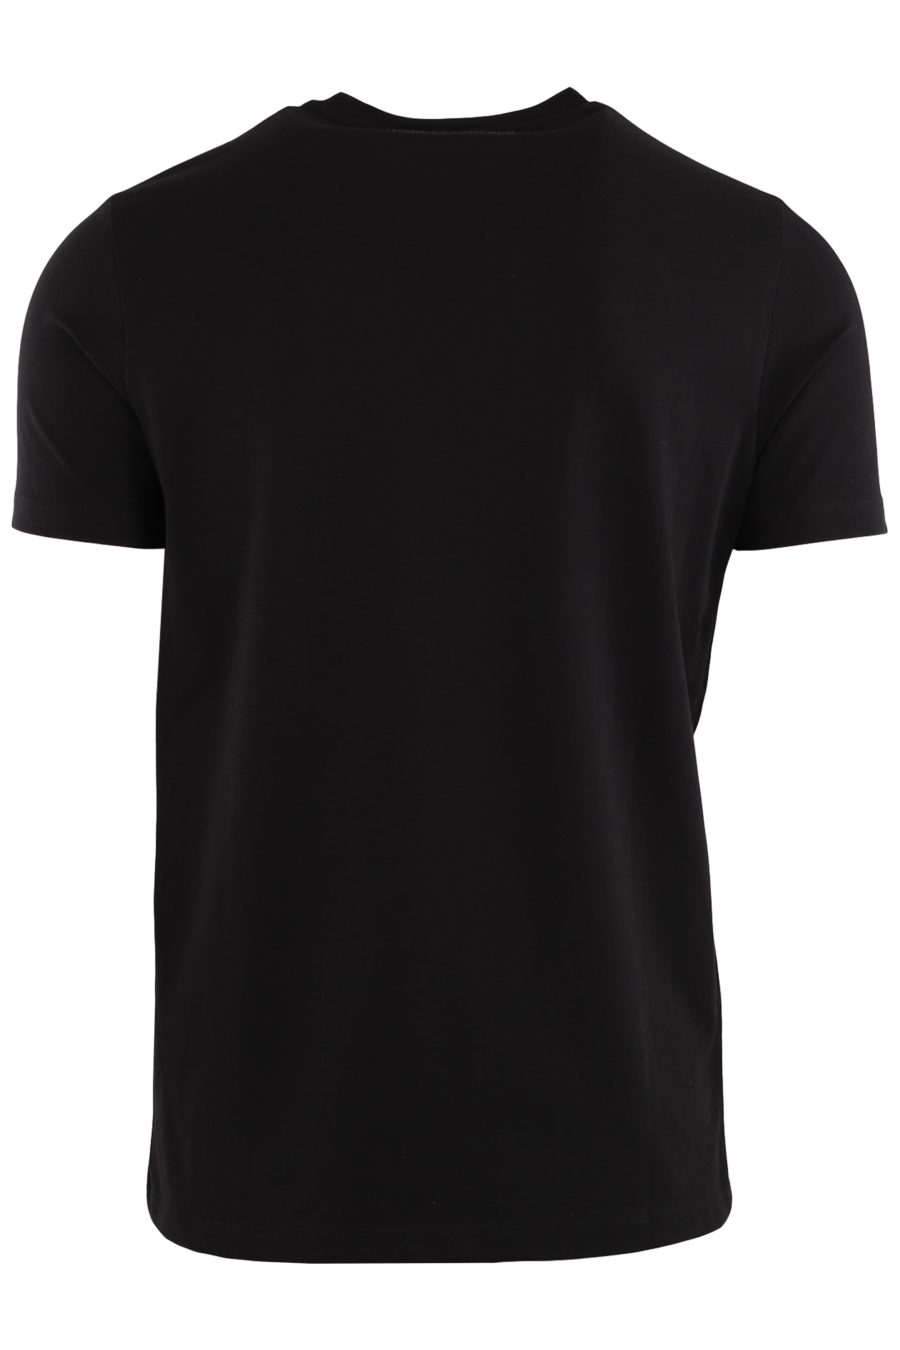 Karl - T-shirt noir avec logo caoutchouté - e15dc0aaf00b7530a6c6070dc3e3345c8cfcbb2